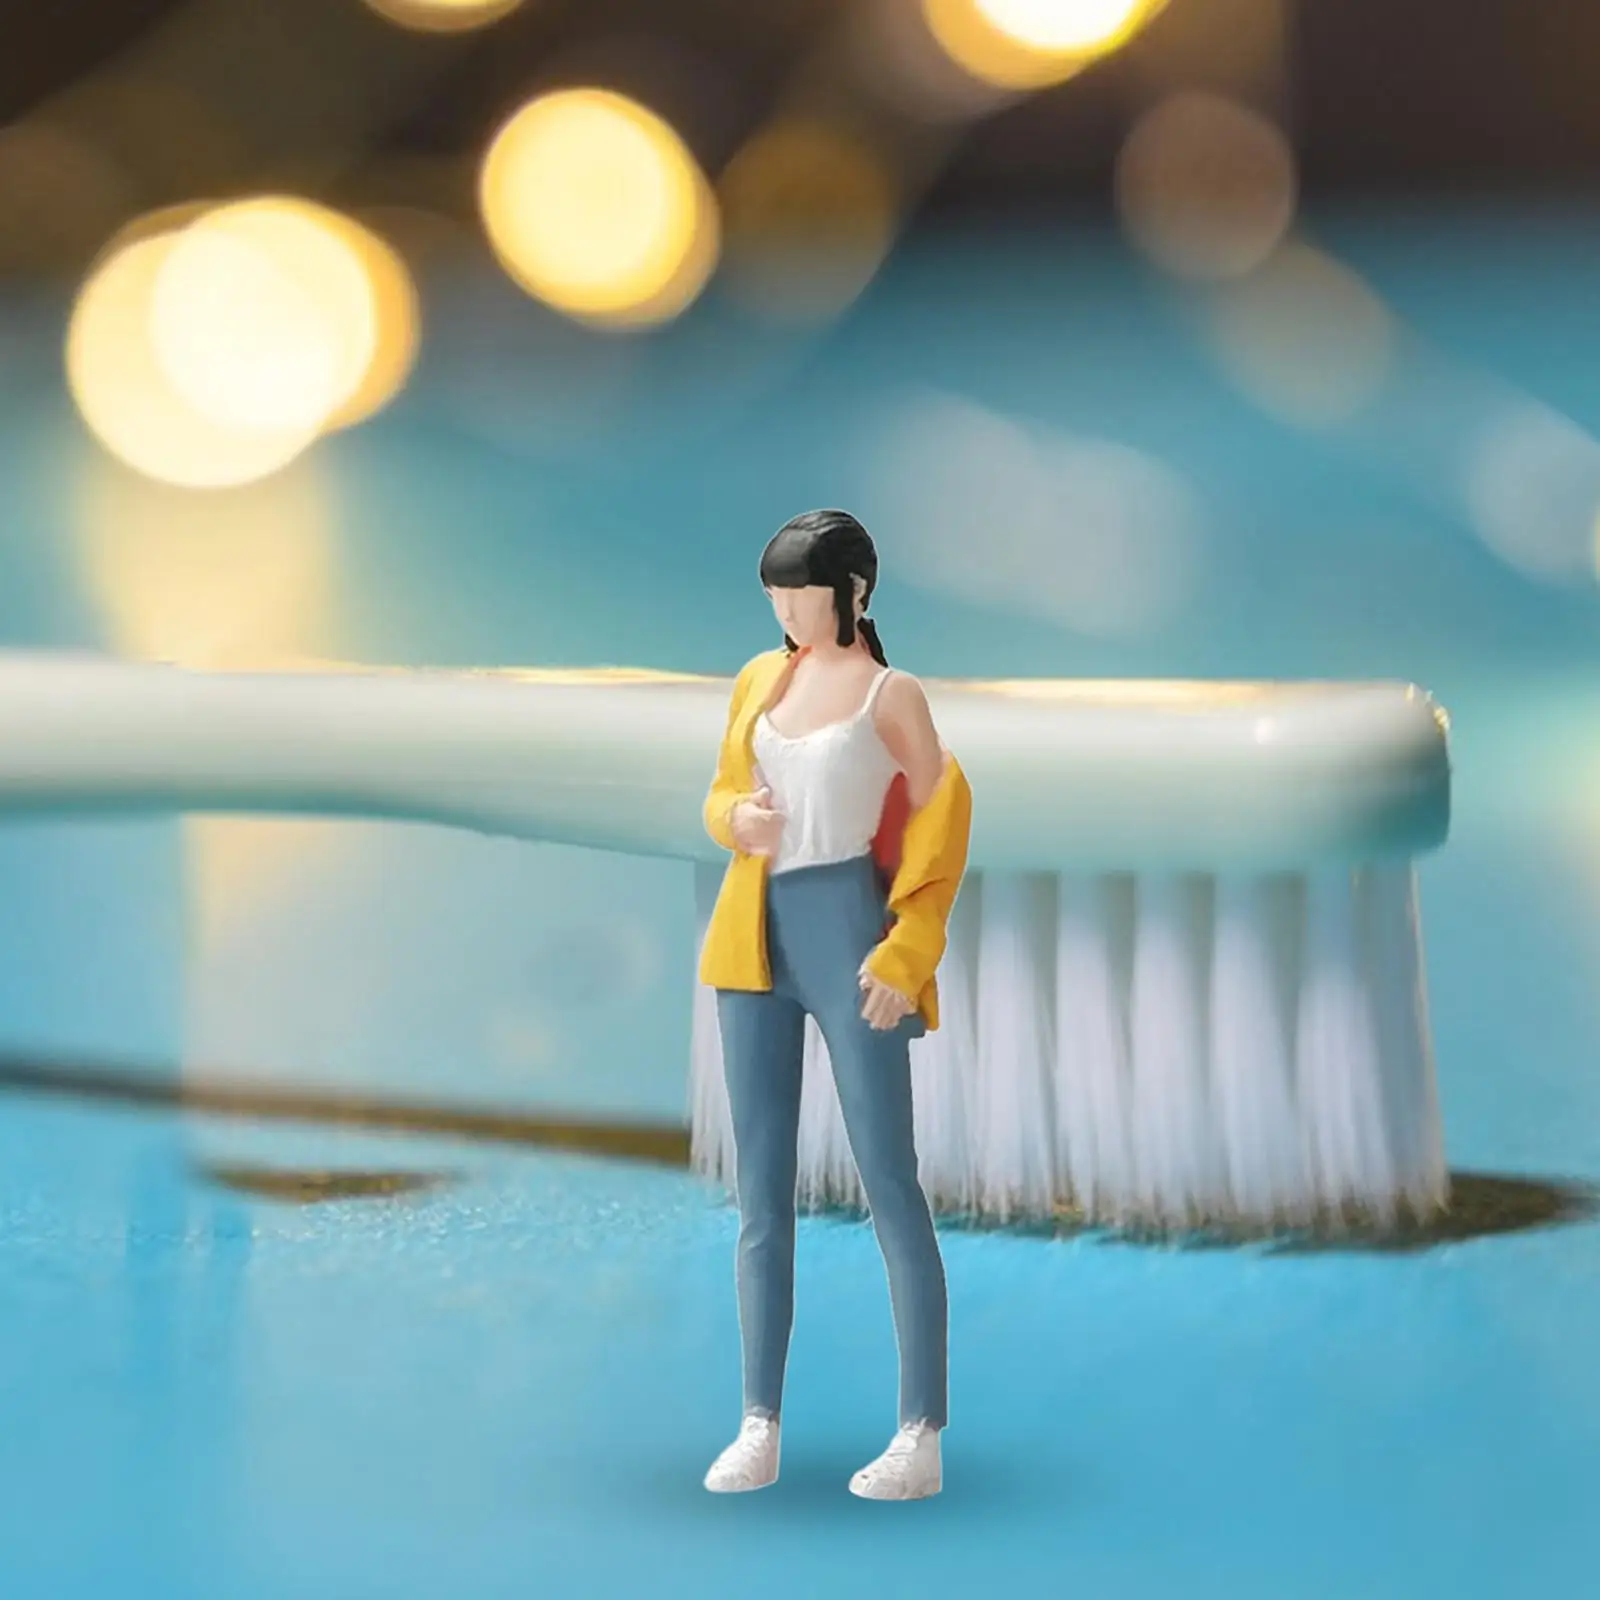 1/64 Girl Figure Pose Scene Movie Props Miniature People Model Resin Figures Micro Landscapes Decor Miniature Scenes Decor